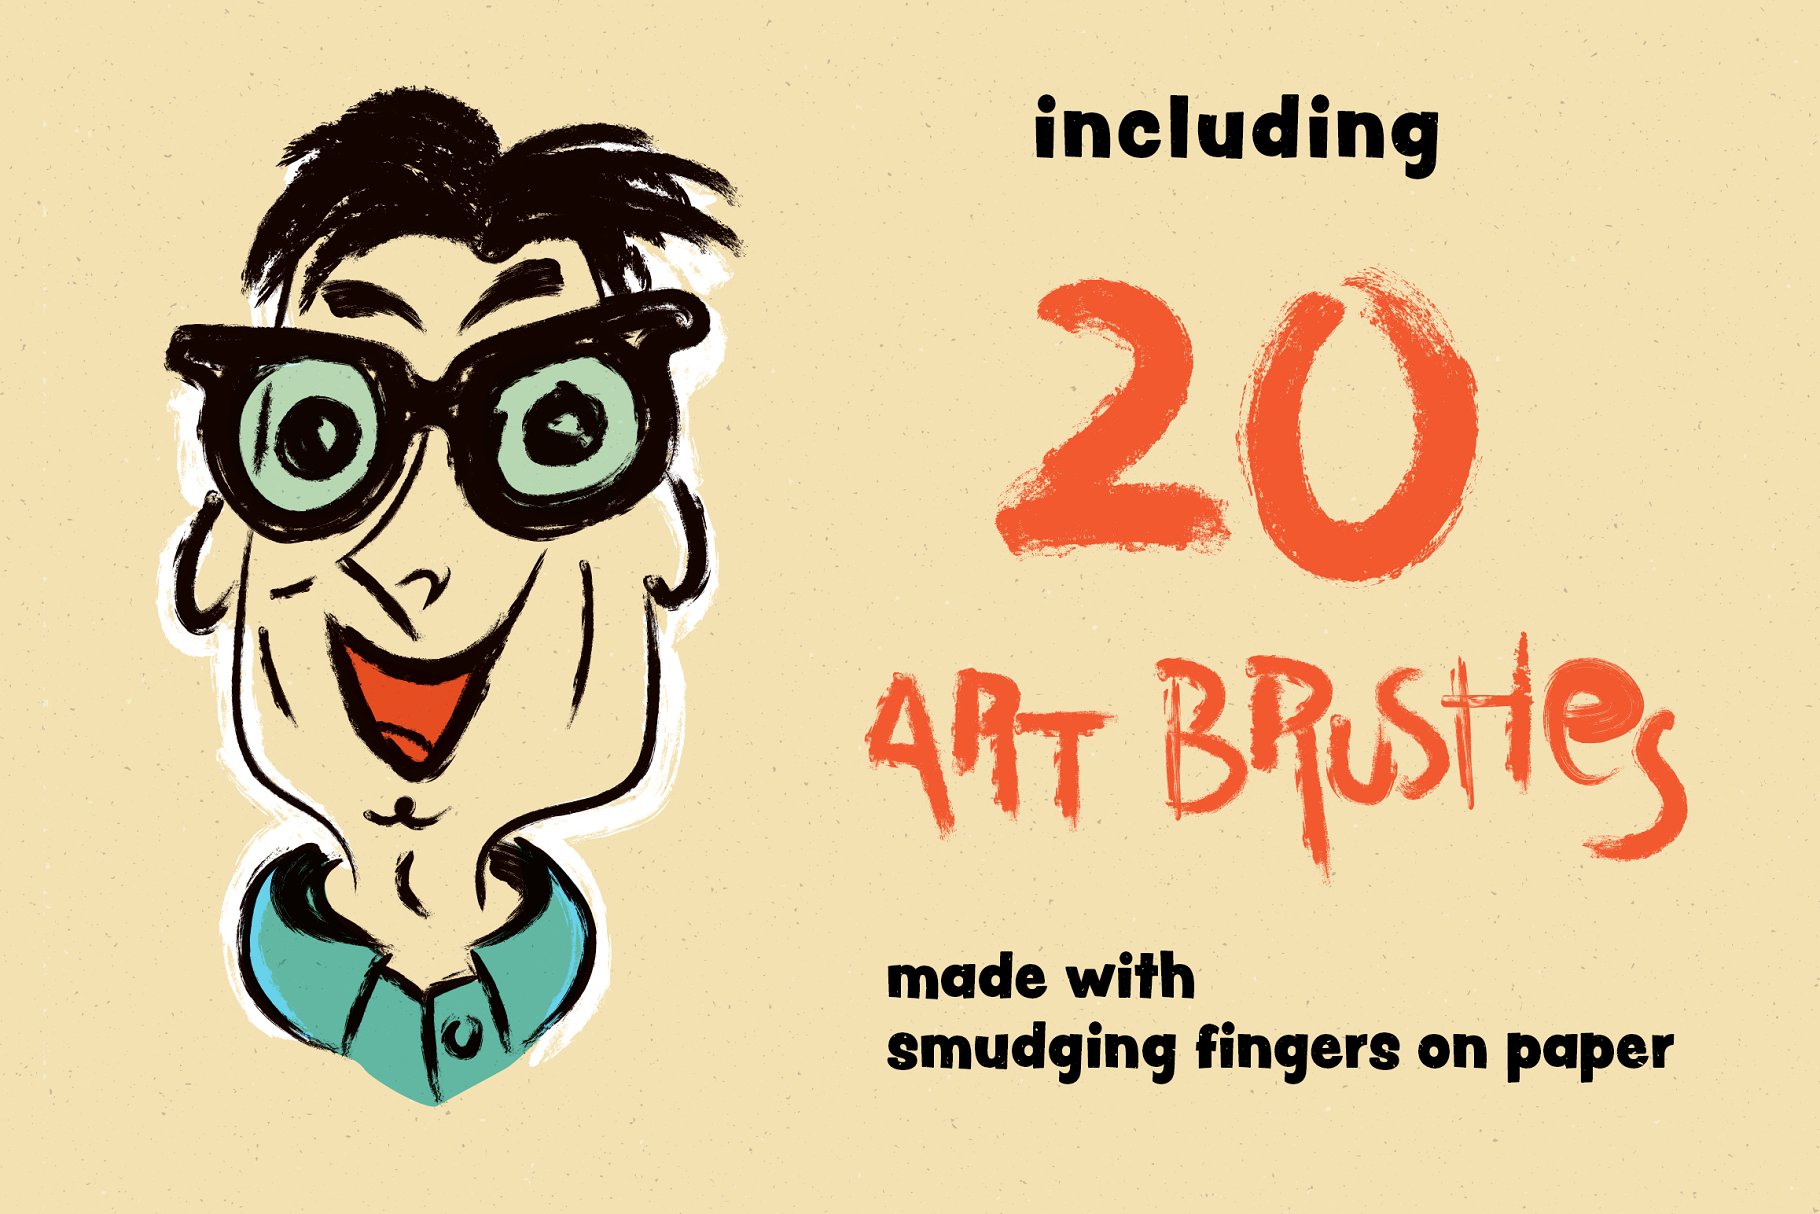 复刻1950s年代设计风格笔刷套装 1950s Artist Brush Pack插图(3)